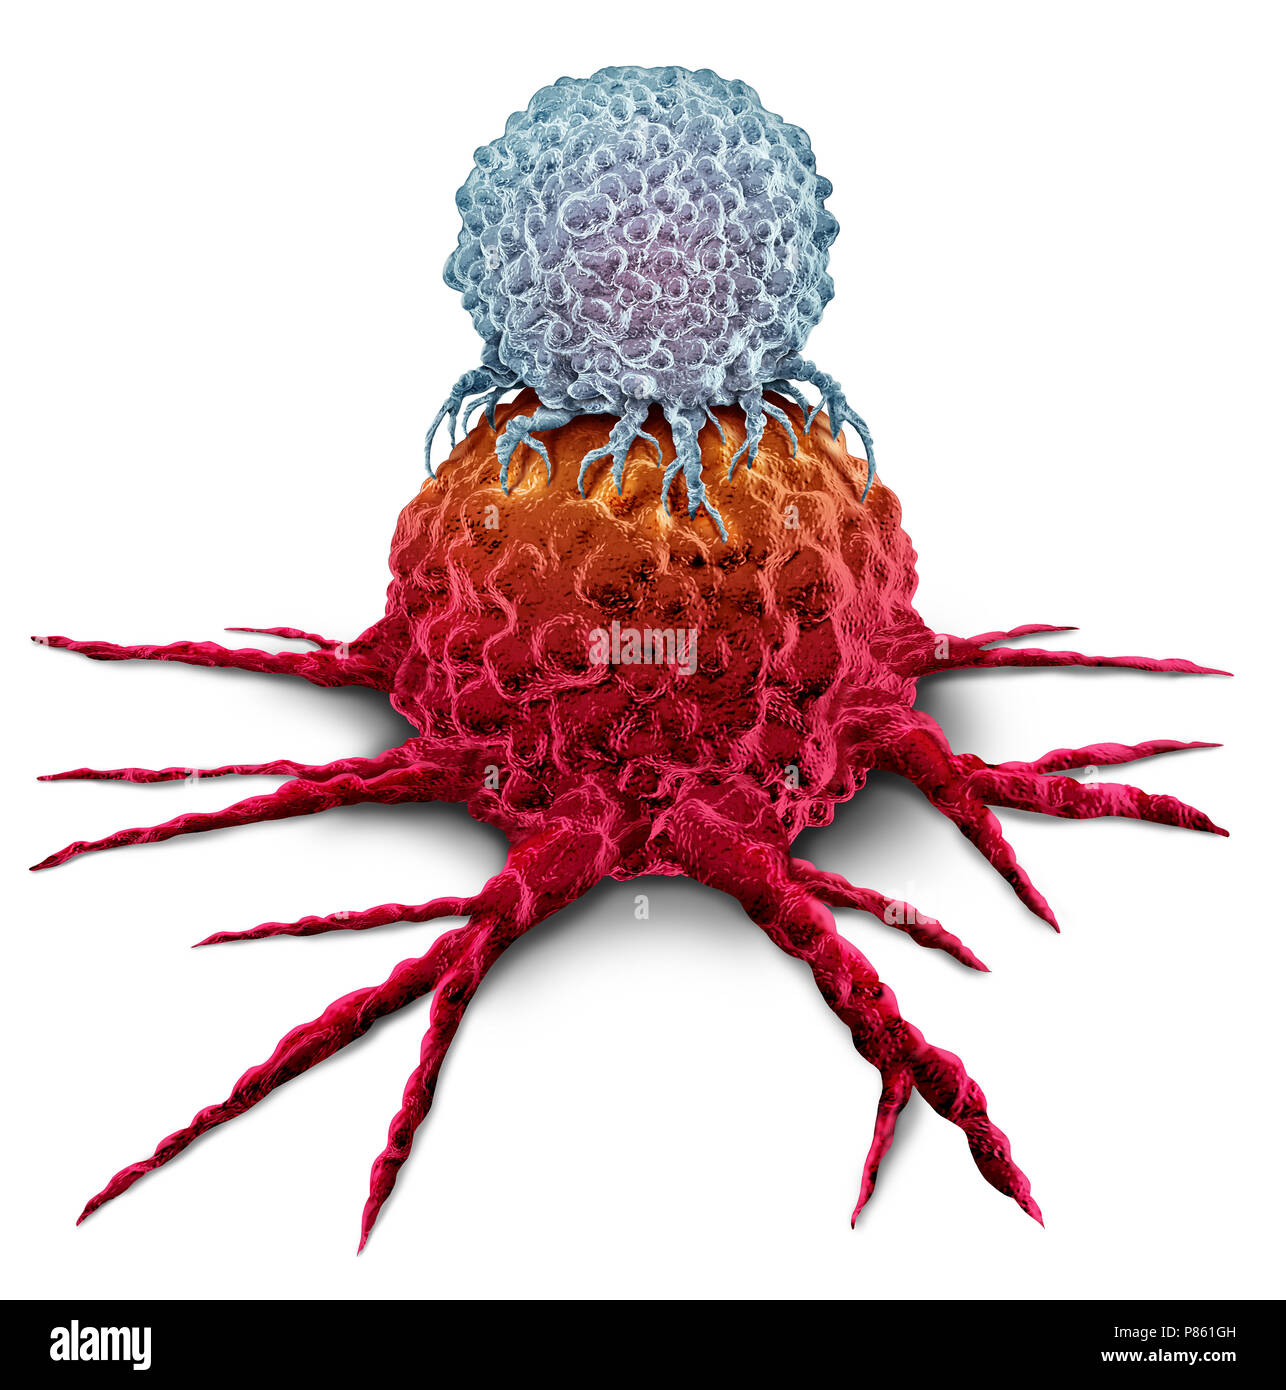 Les cellules T'attaquer une tumeur du cancer comme un système immunitaire d'immunothérapie comme un concept de thérapie ou de la biomédecine biomédicale traitement oncologique. Banque D'Images